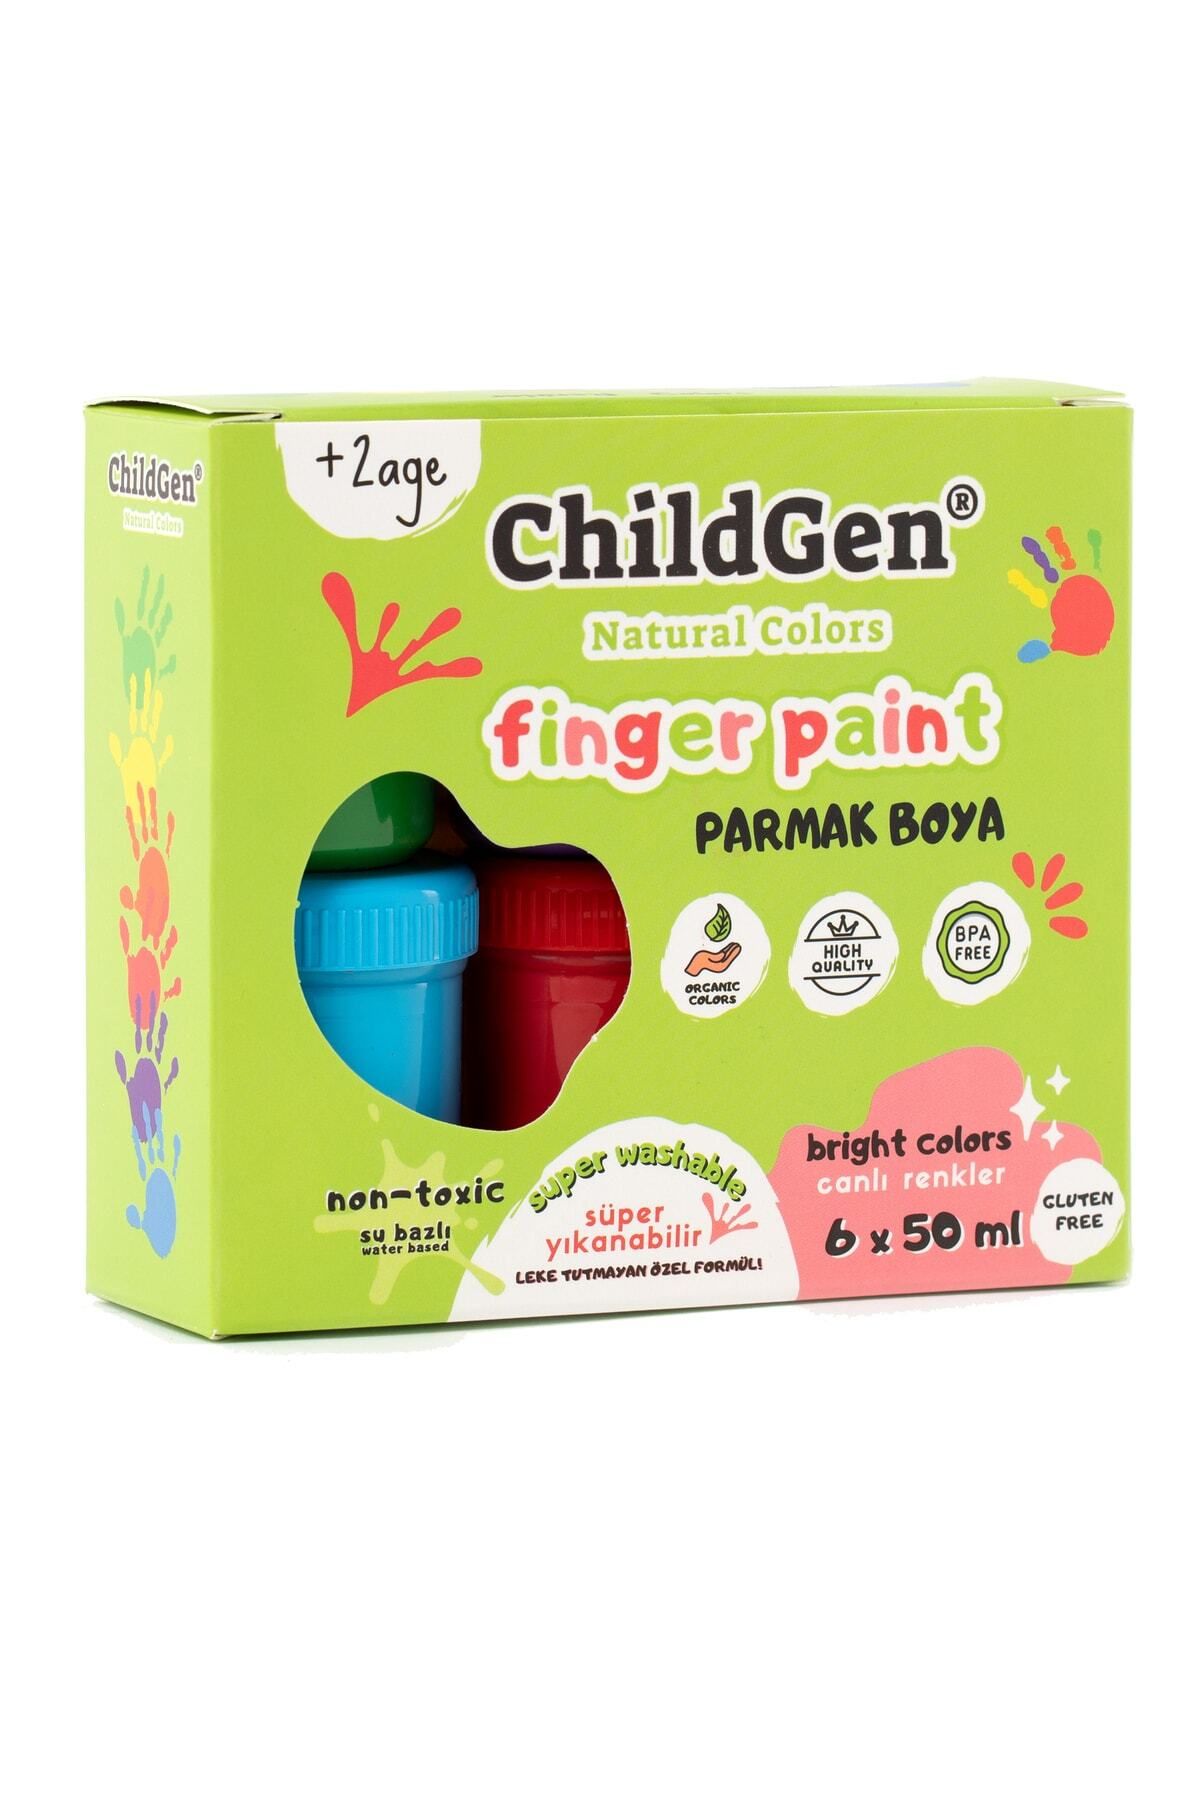 ChildGen Süper Yıkanabilir Parmak Boya-6'lı Set-6x50gr - Palet Hediyeli!